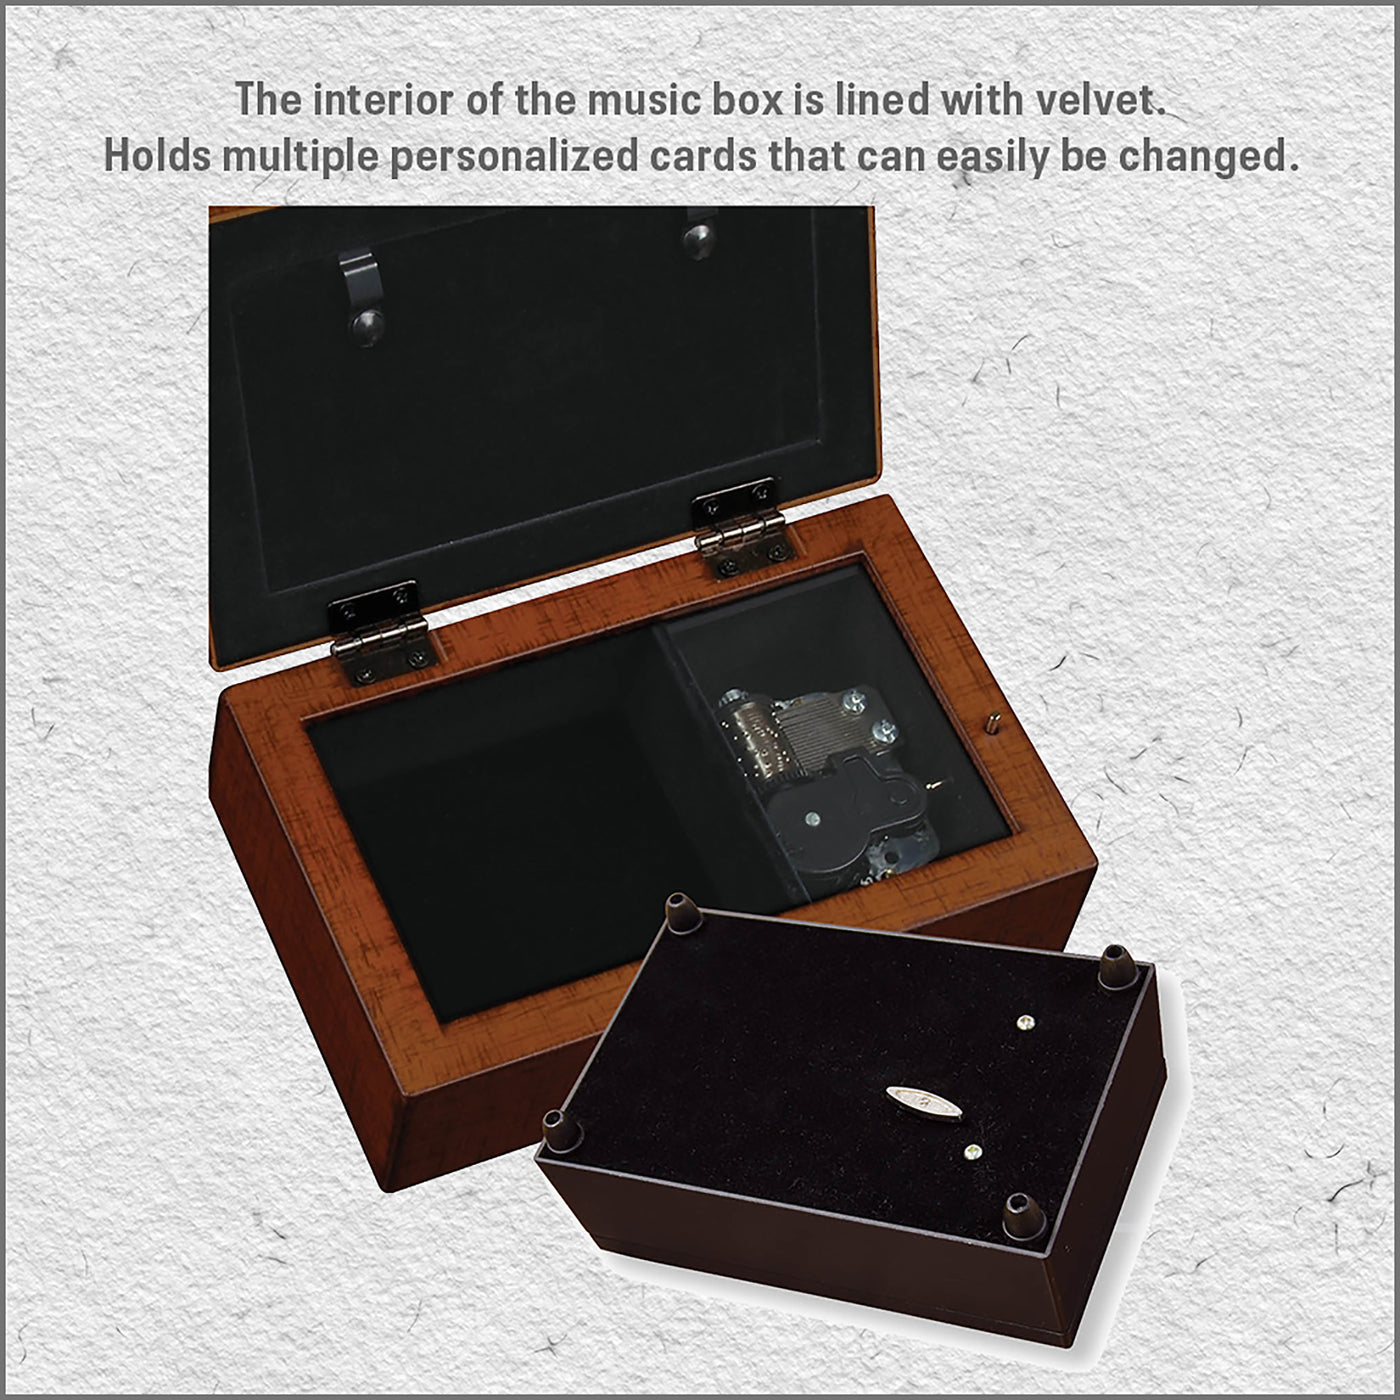 music box description